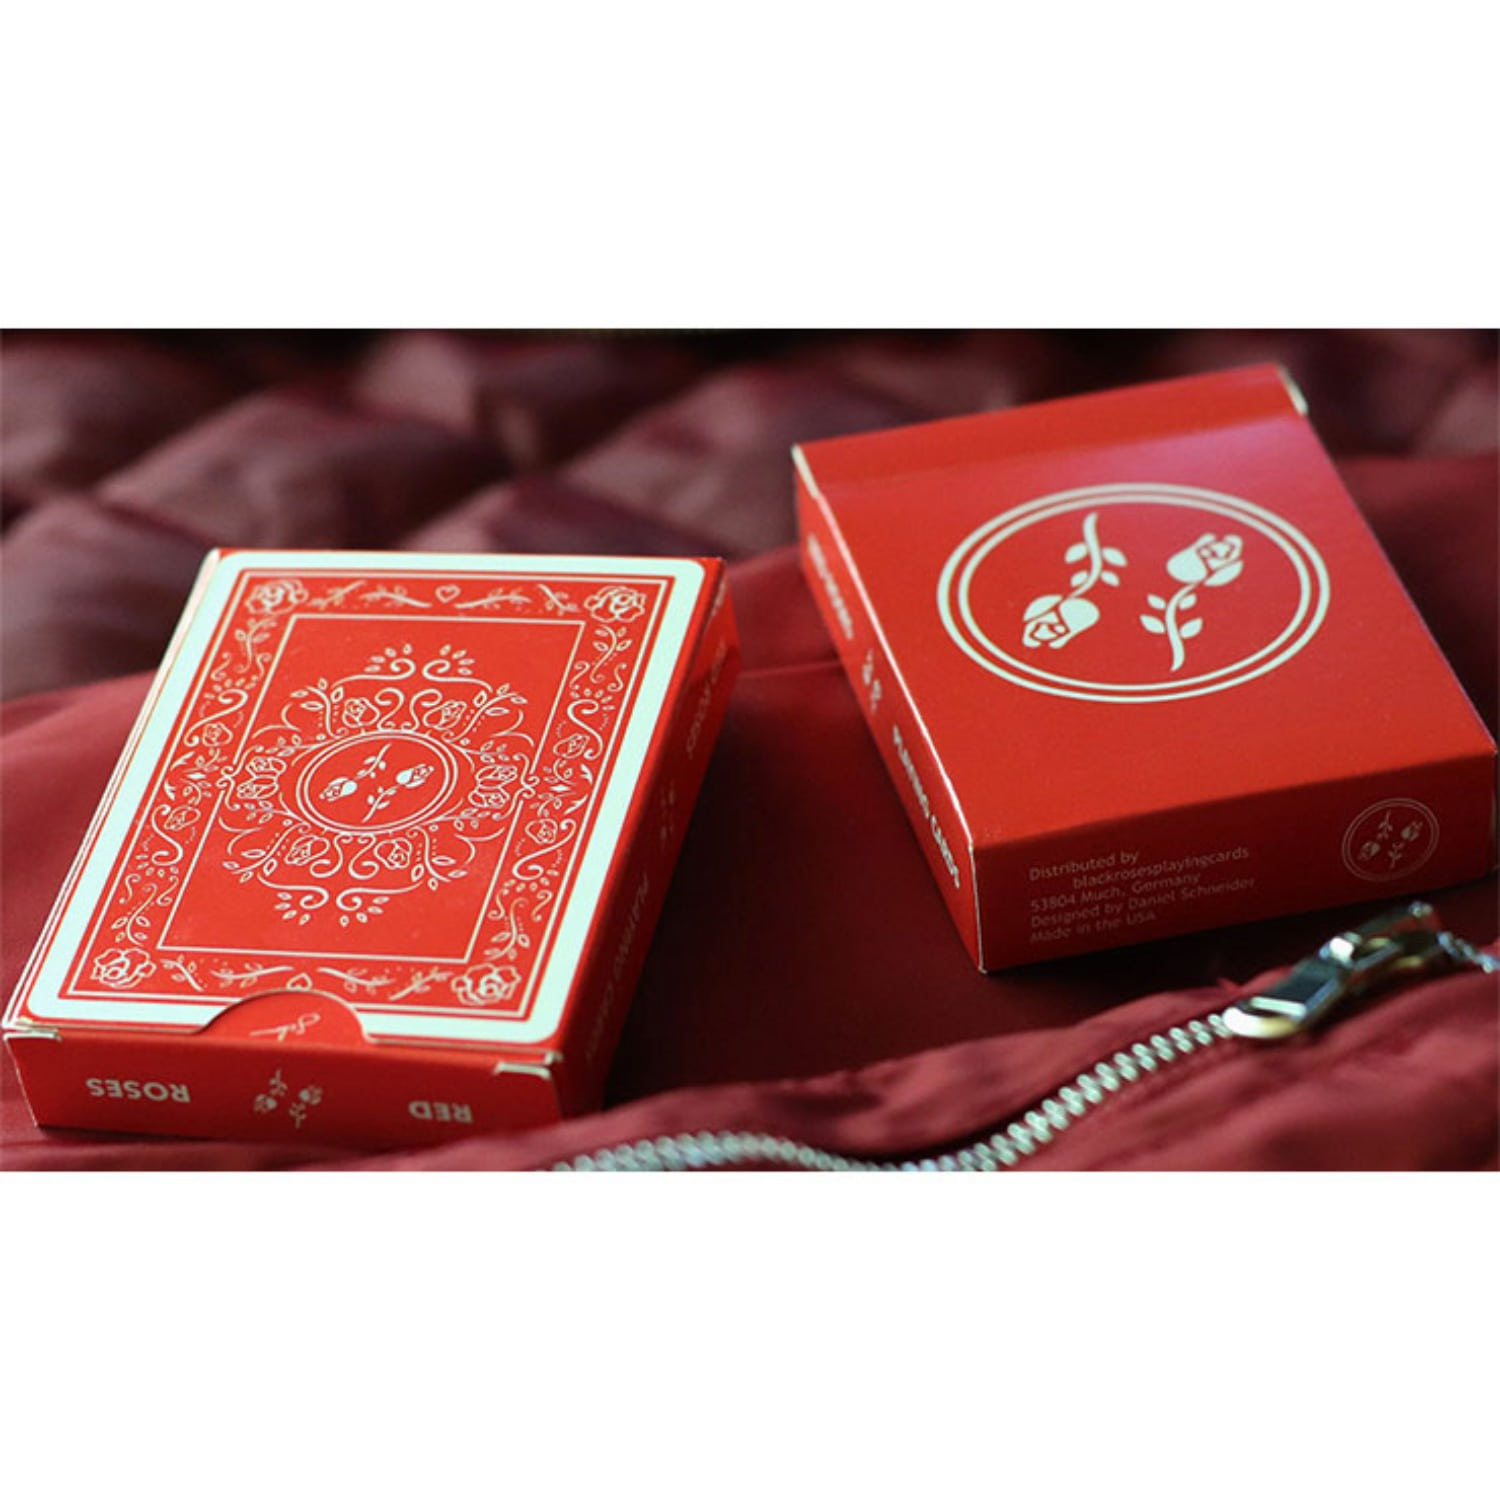 [레드로즈]Red Roses Playing Cards by Daniel Schneider